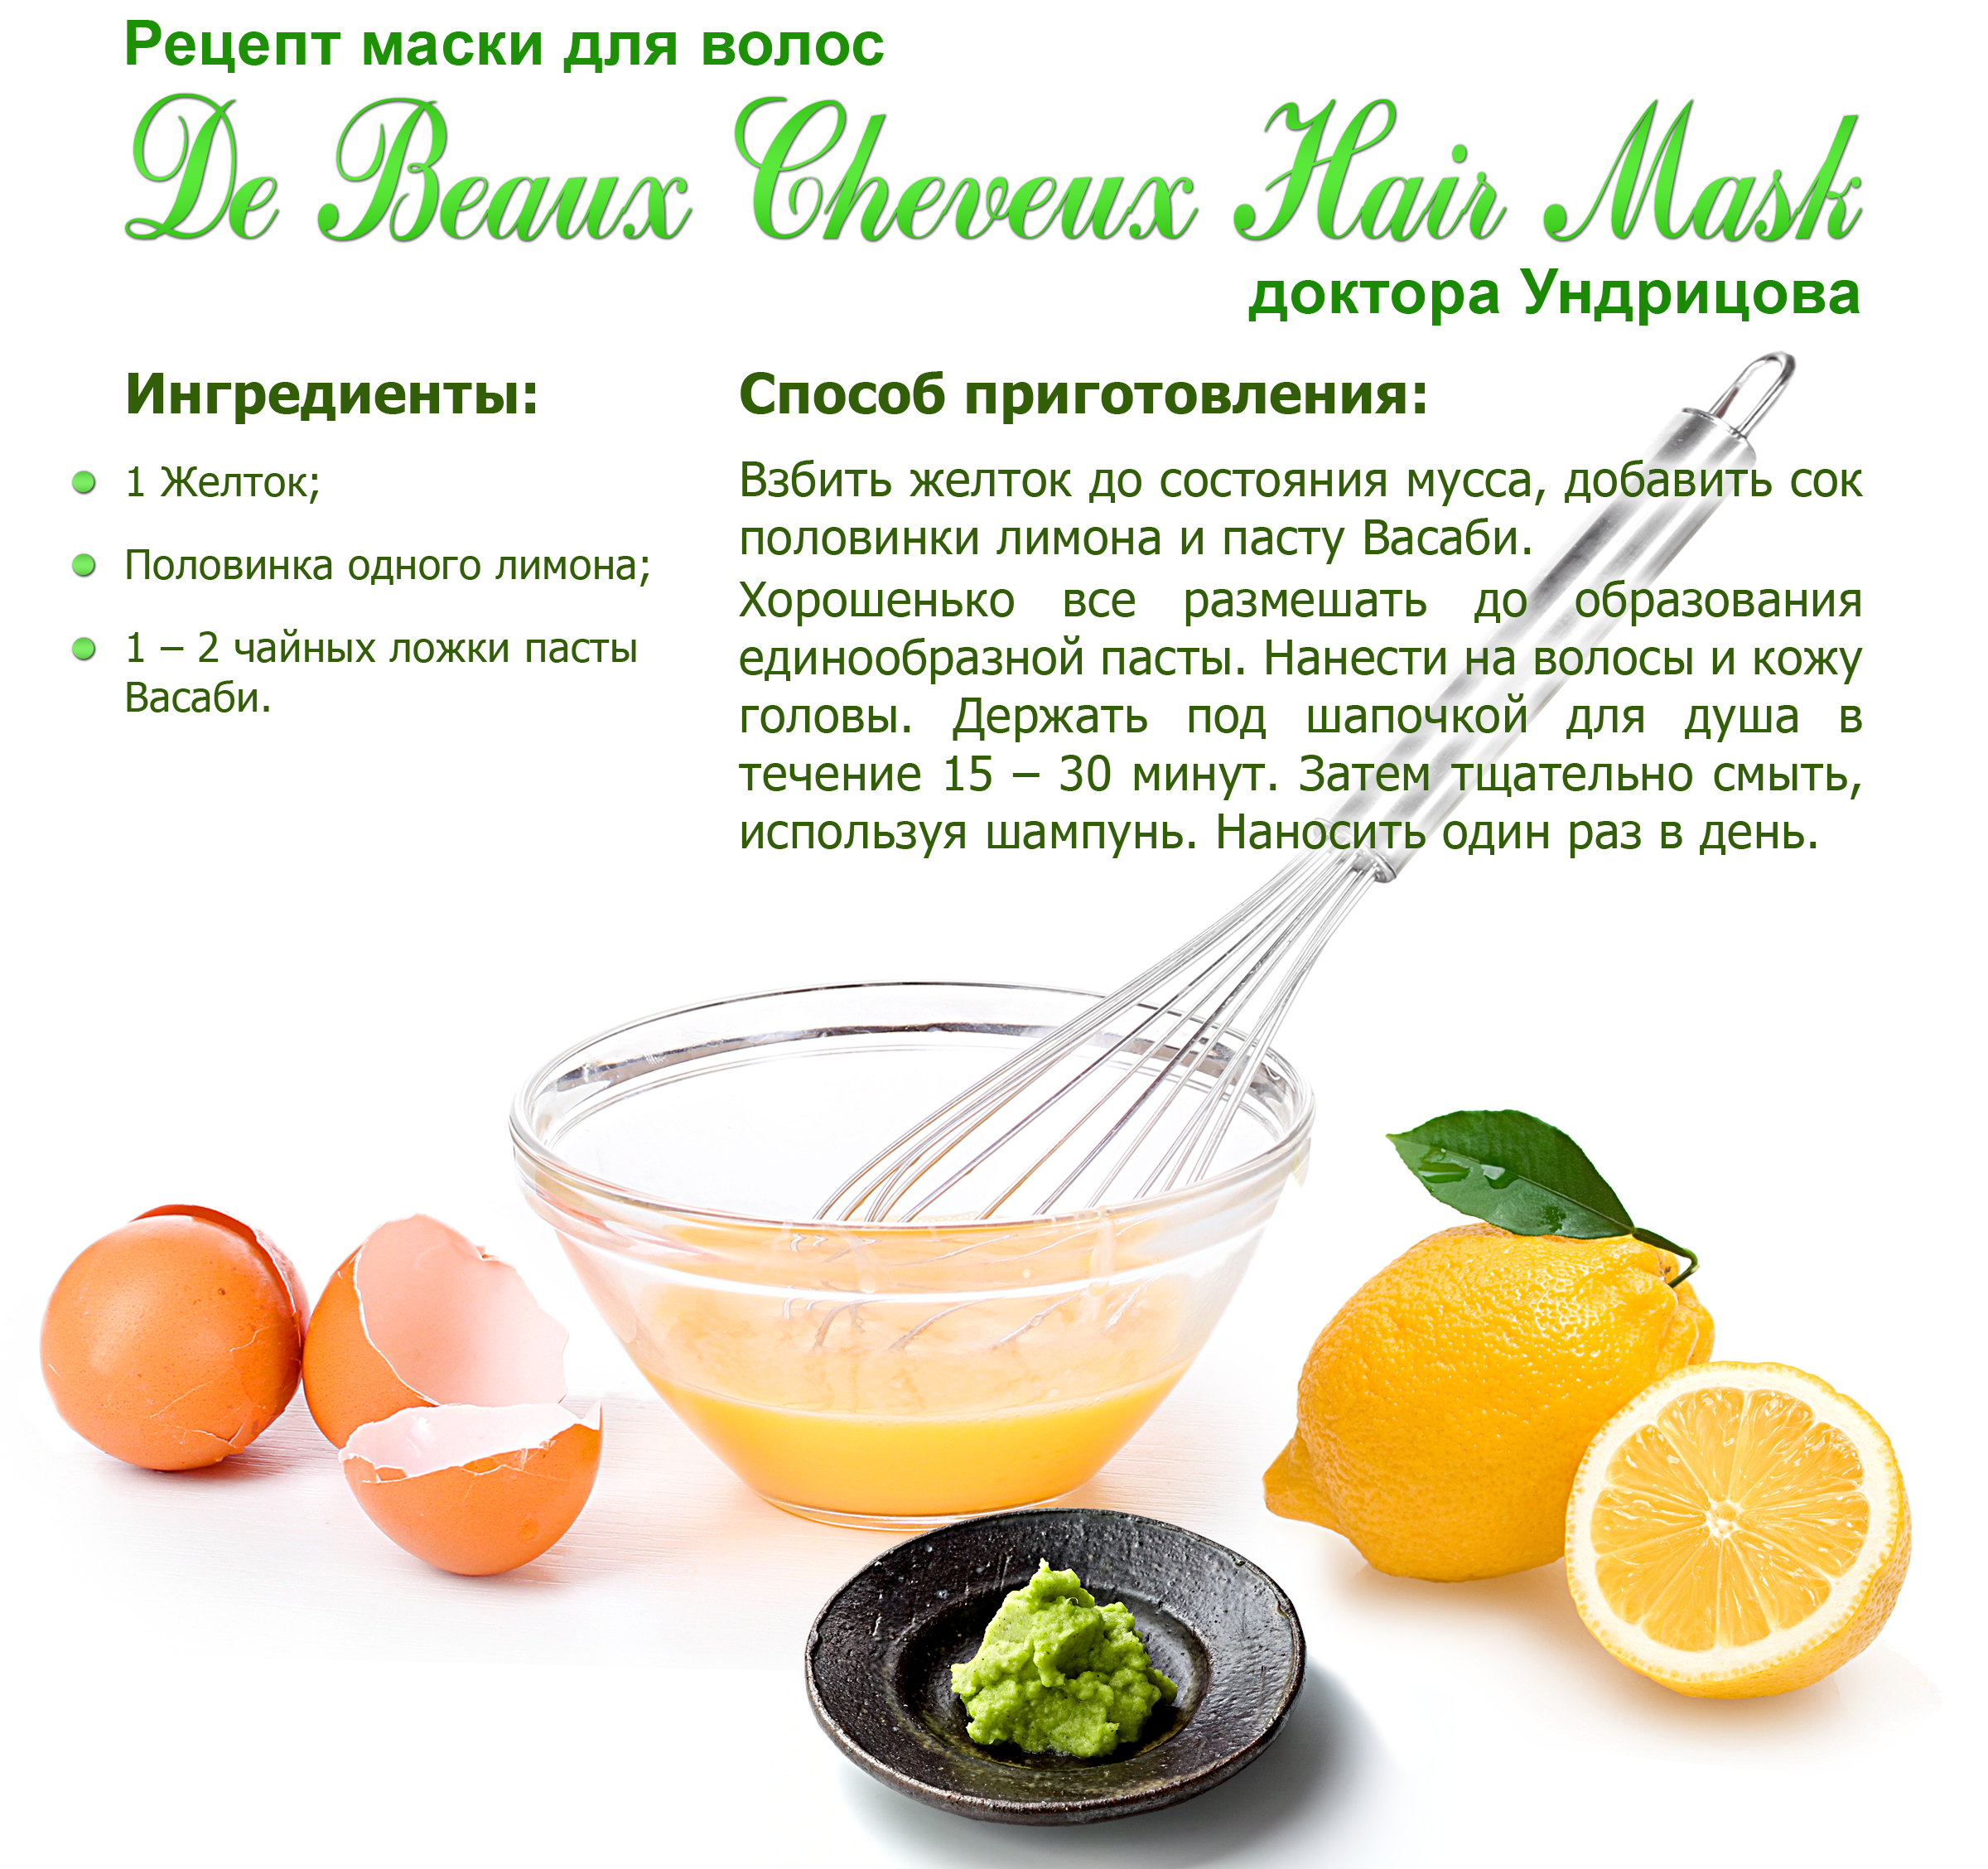 Эффективные маски для волос с горчицей и сахаром